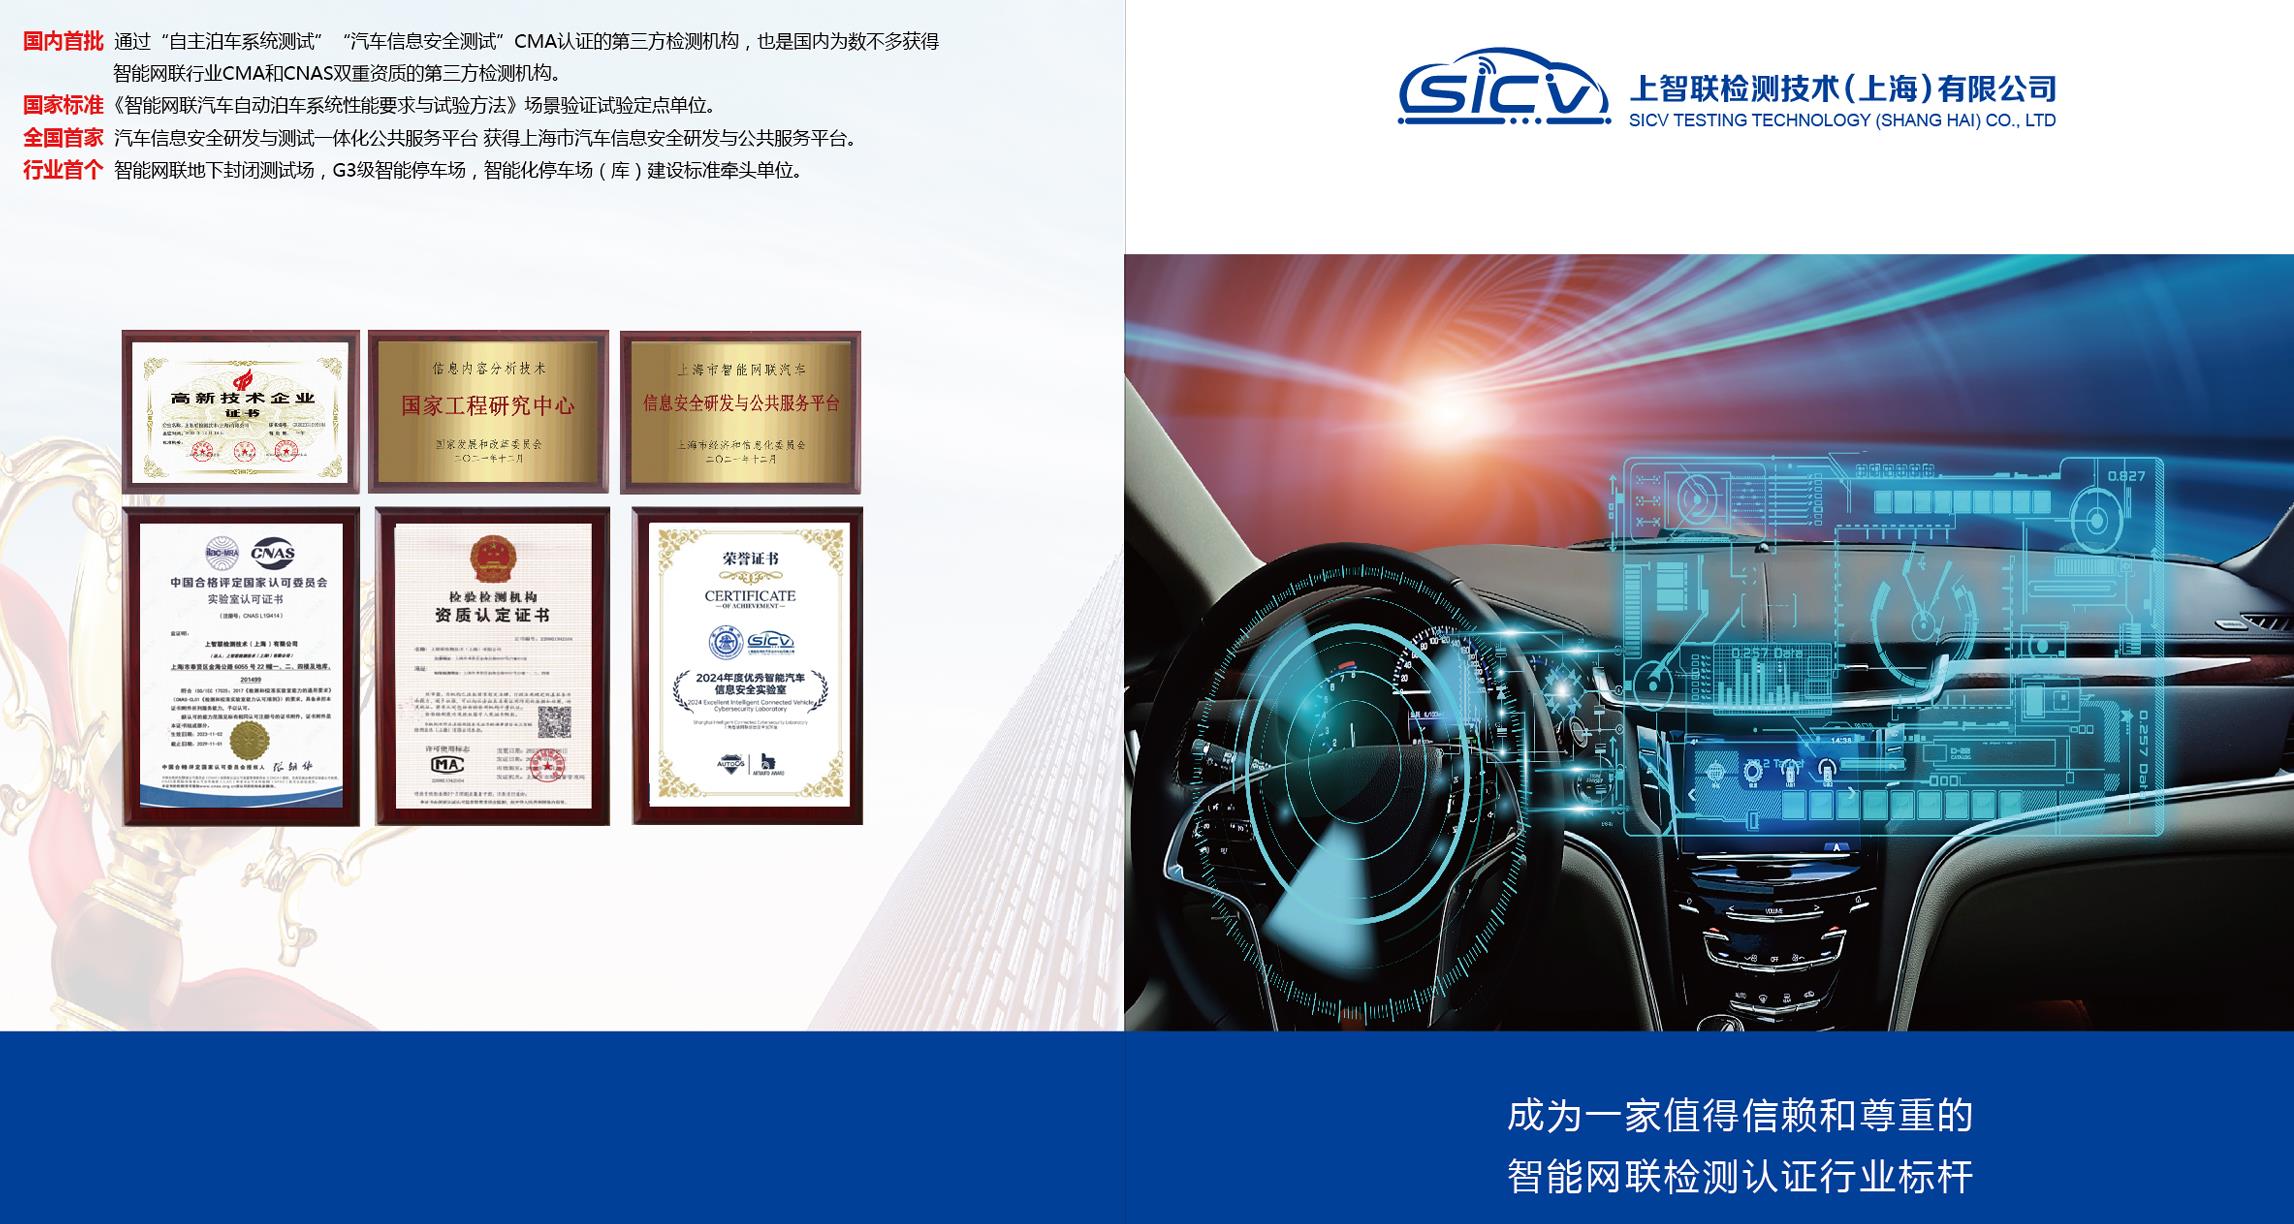 上海智能网联汽车技术中心上智联检测智驾测试基地即将投入使用